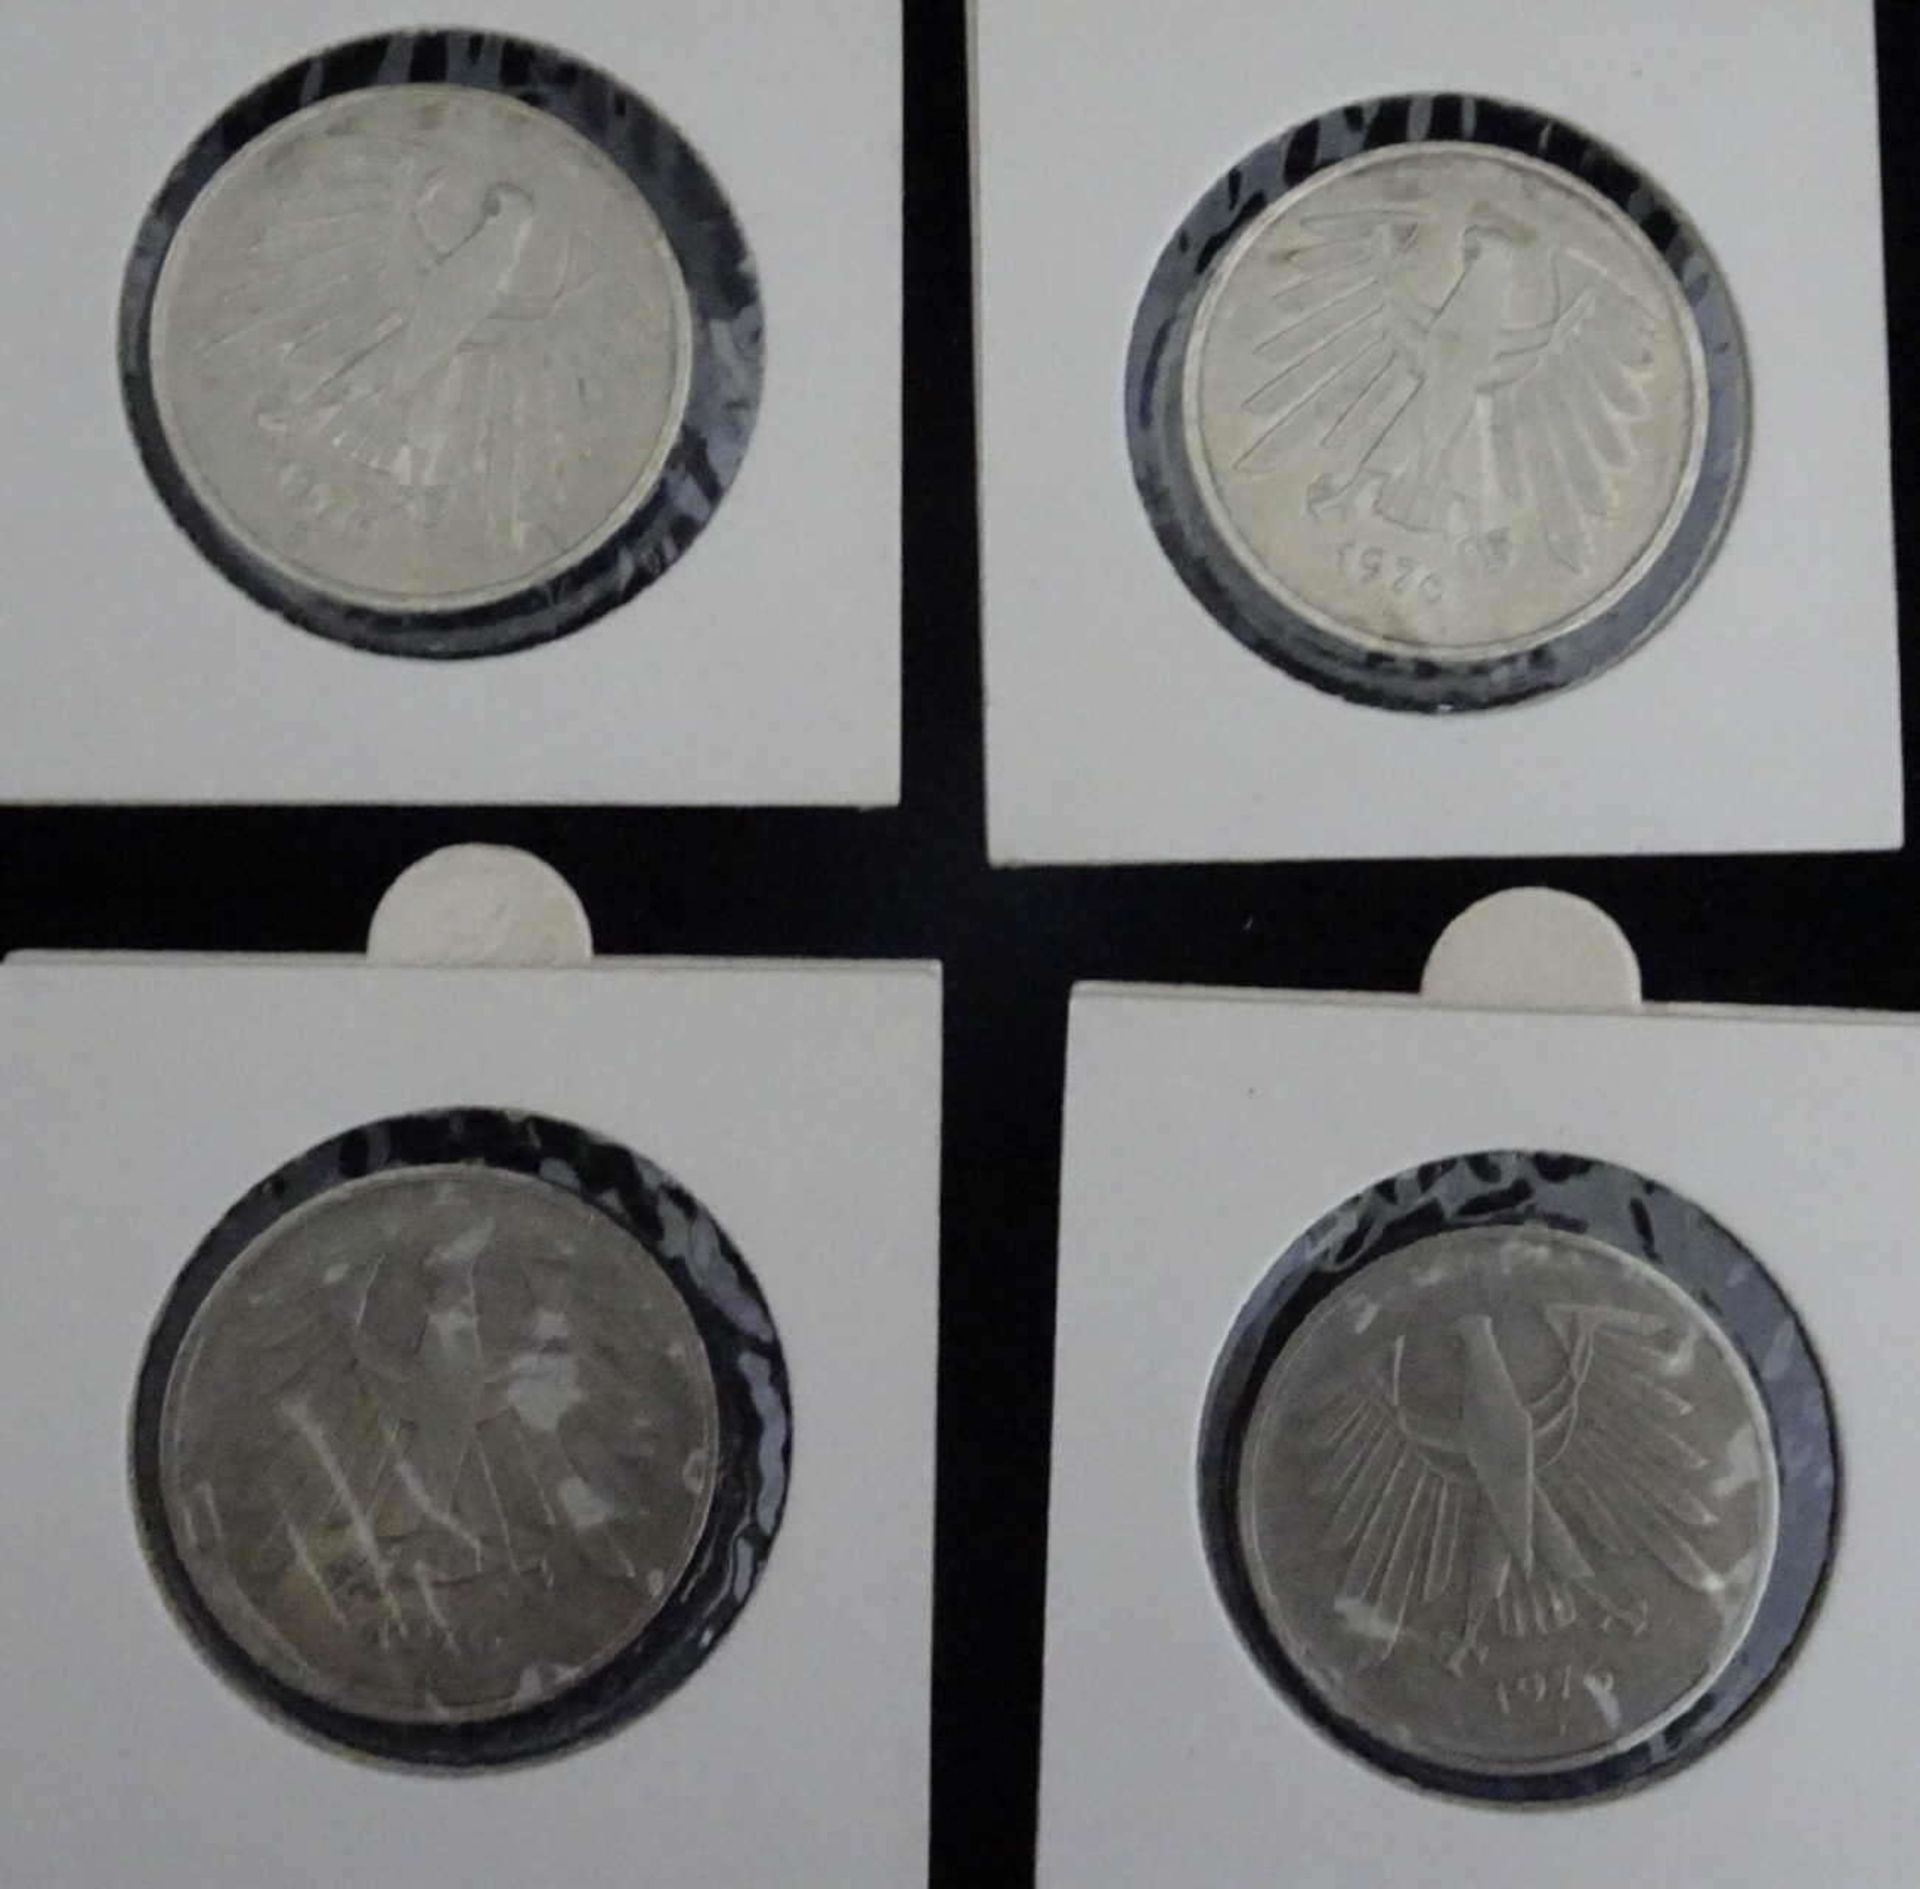 BRD 1976, 4 x 5.- DM - Münzen der Prägestätten D, F, G und J . Jaeger: 415. In Schutzhülle. - Bild 2 aus 2